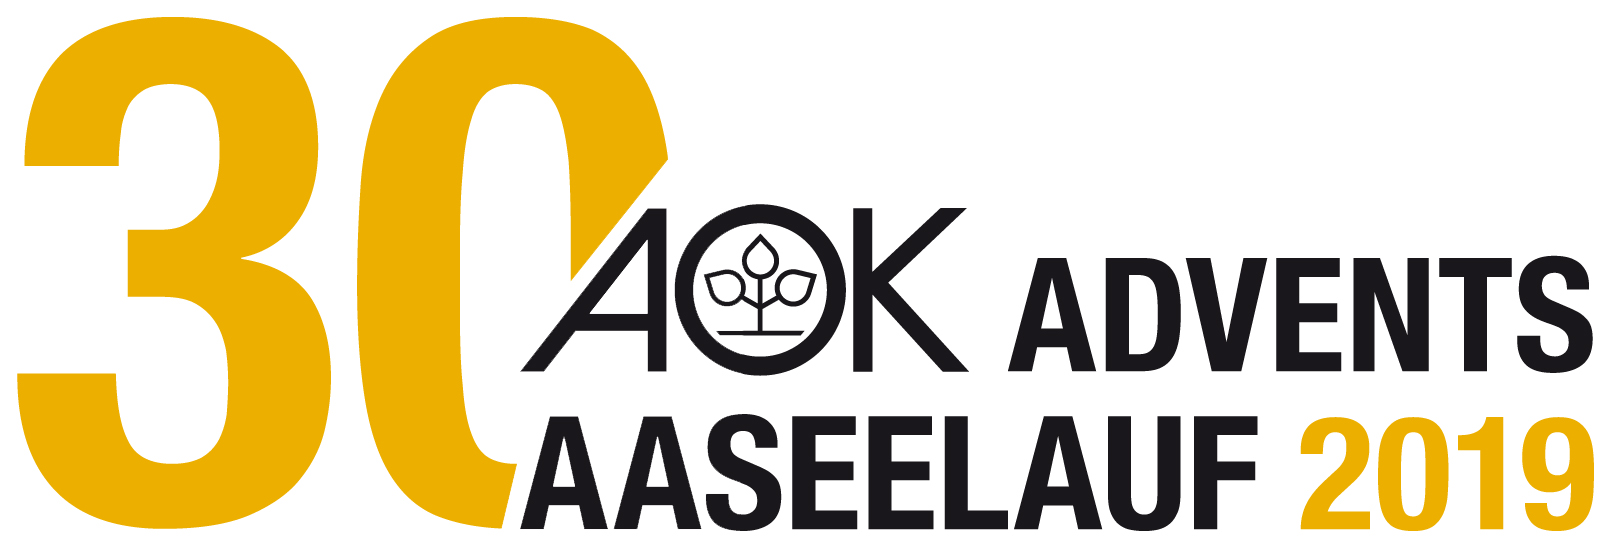 30. AOK Advents-Aaseelauf - Anmeldung öffnet 14.08.2019 um 6:00 Uhr